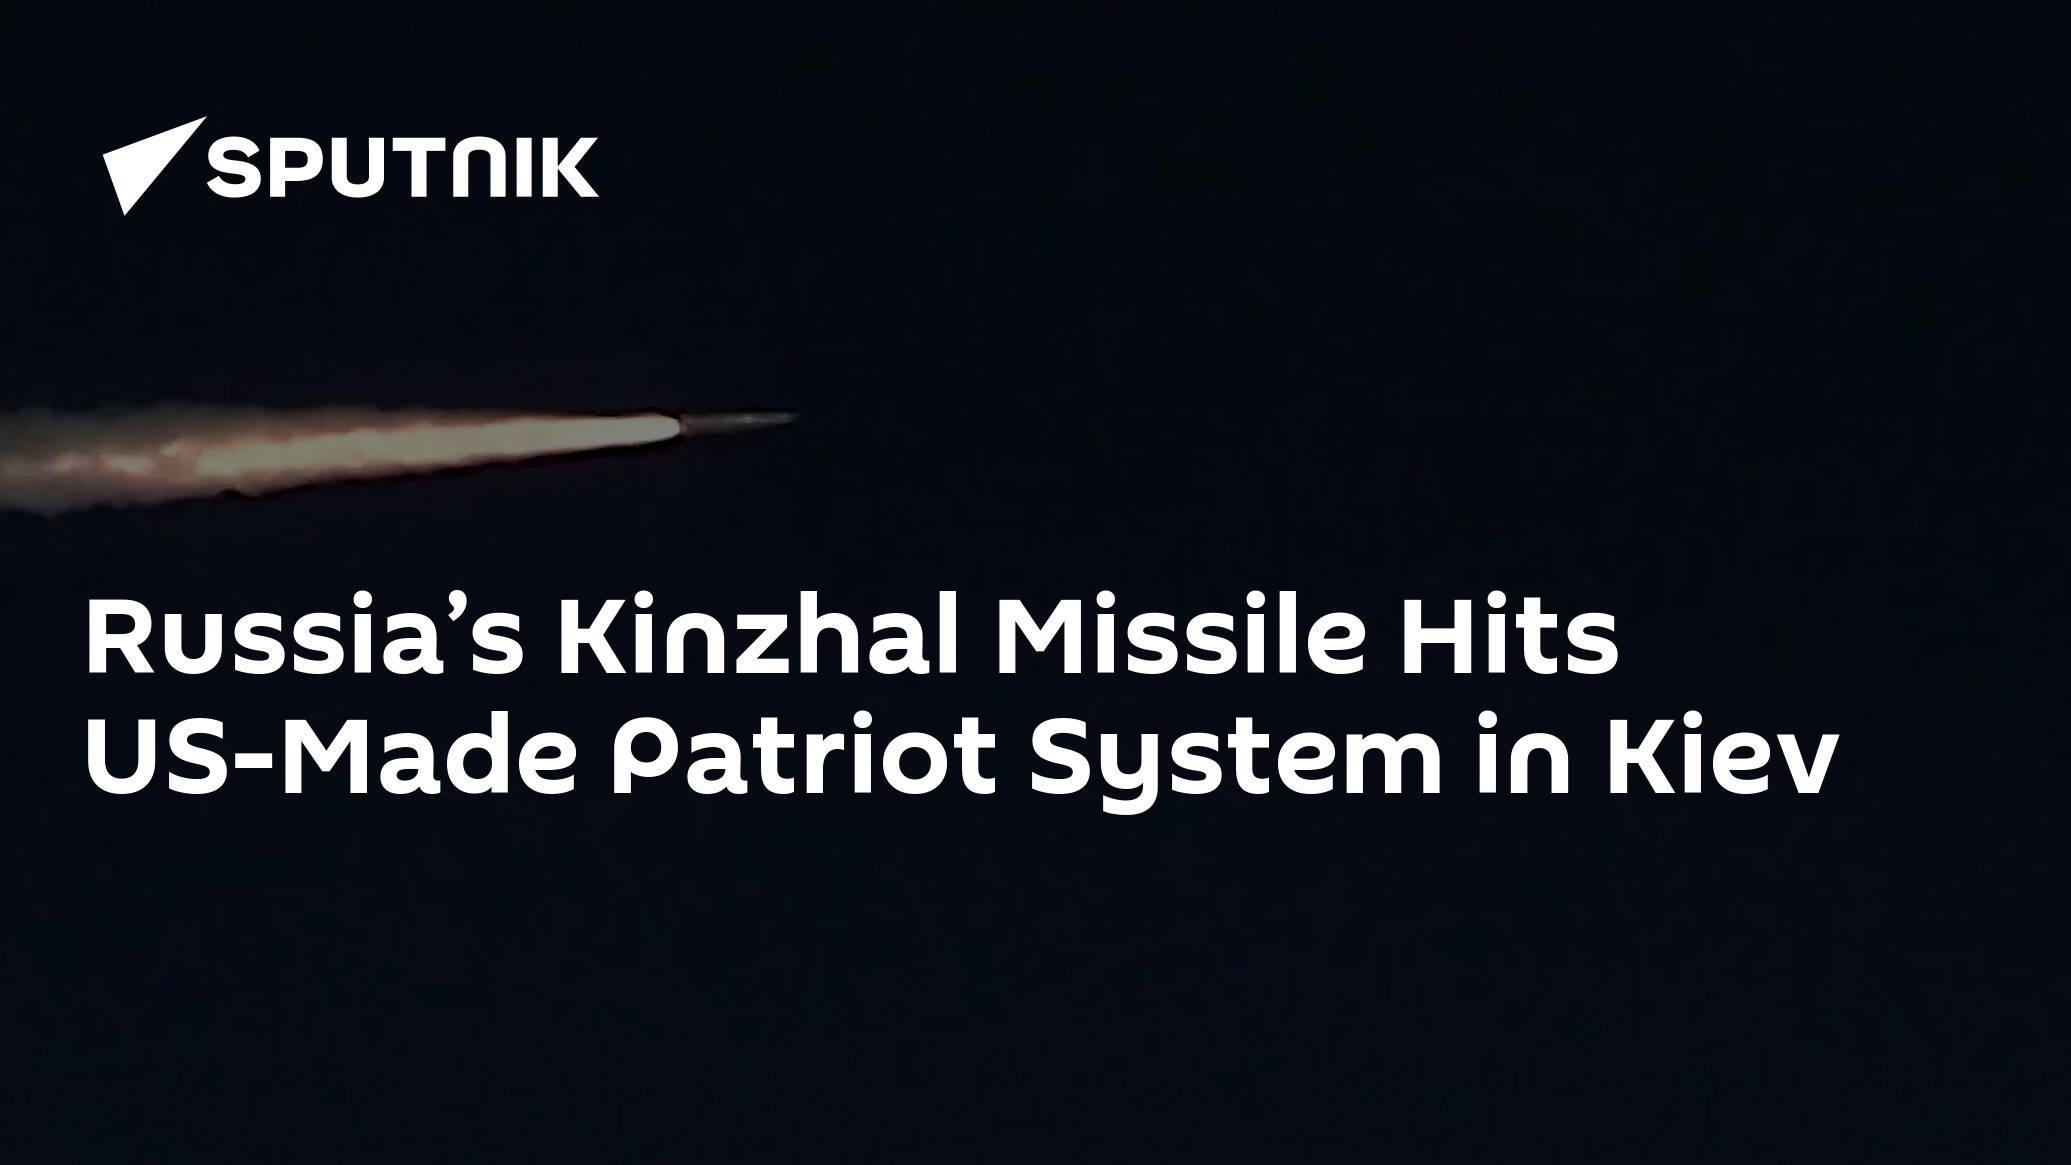 Russia’s Kinzhal Missile Destroys Patriot System in Kiev